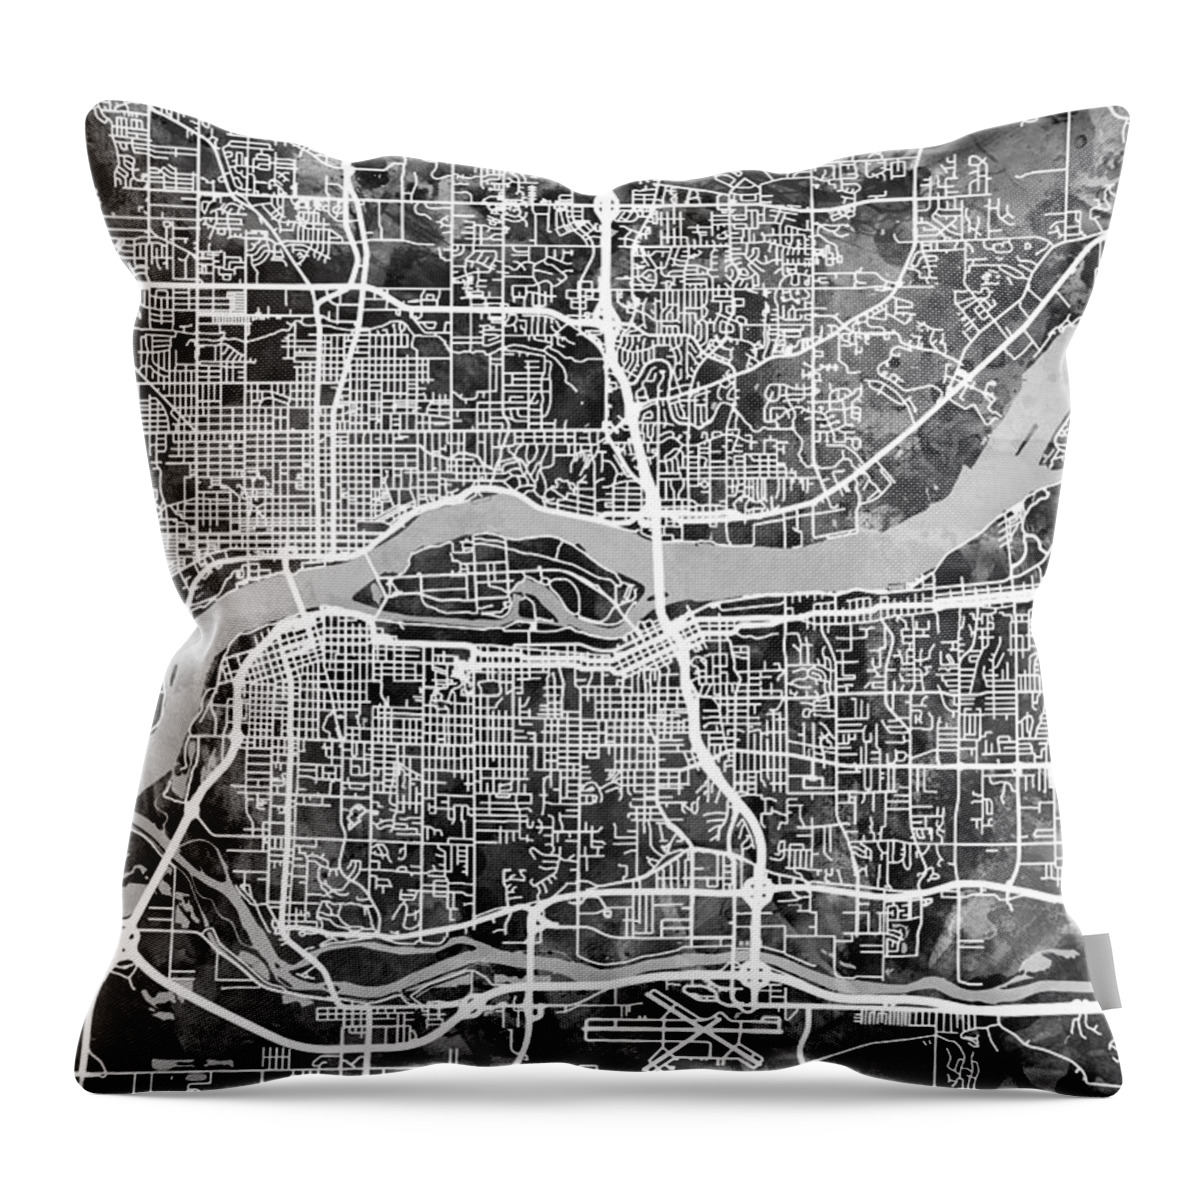 Street Map Throw Pillow featuring the digital art Quad Cities Street Map by Michael Tompsett